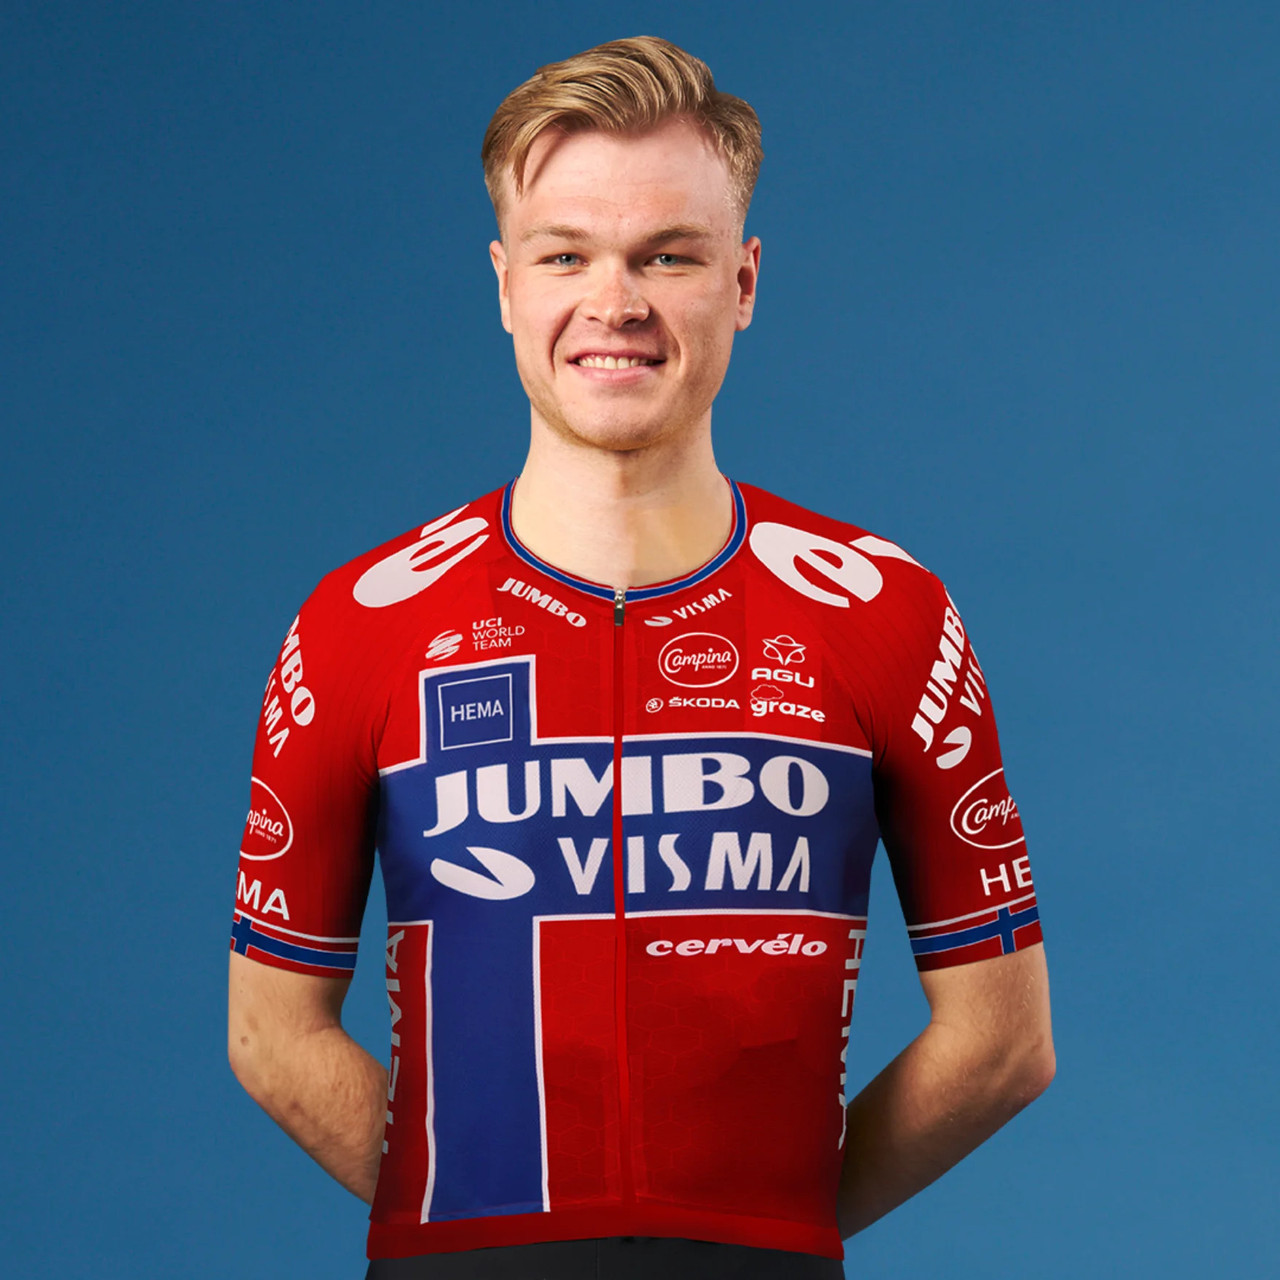 2022 Jumbo Visma Norwegian Champion Jersey Rider